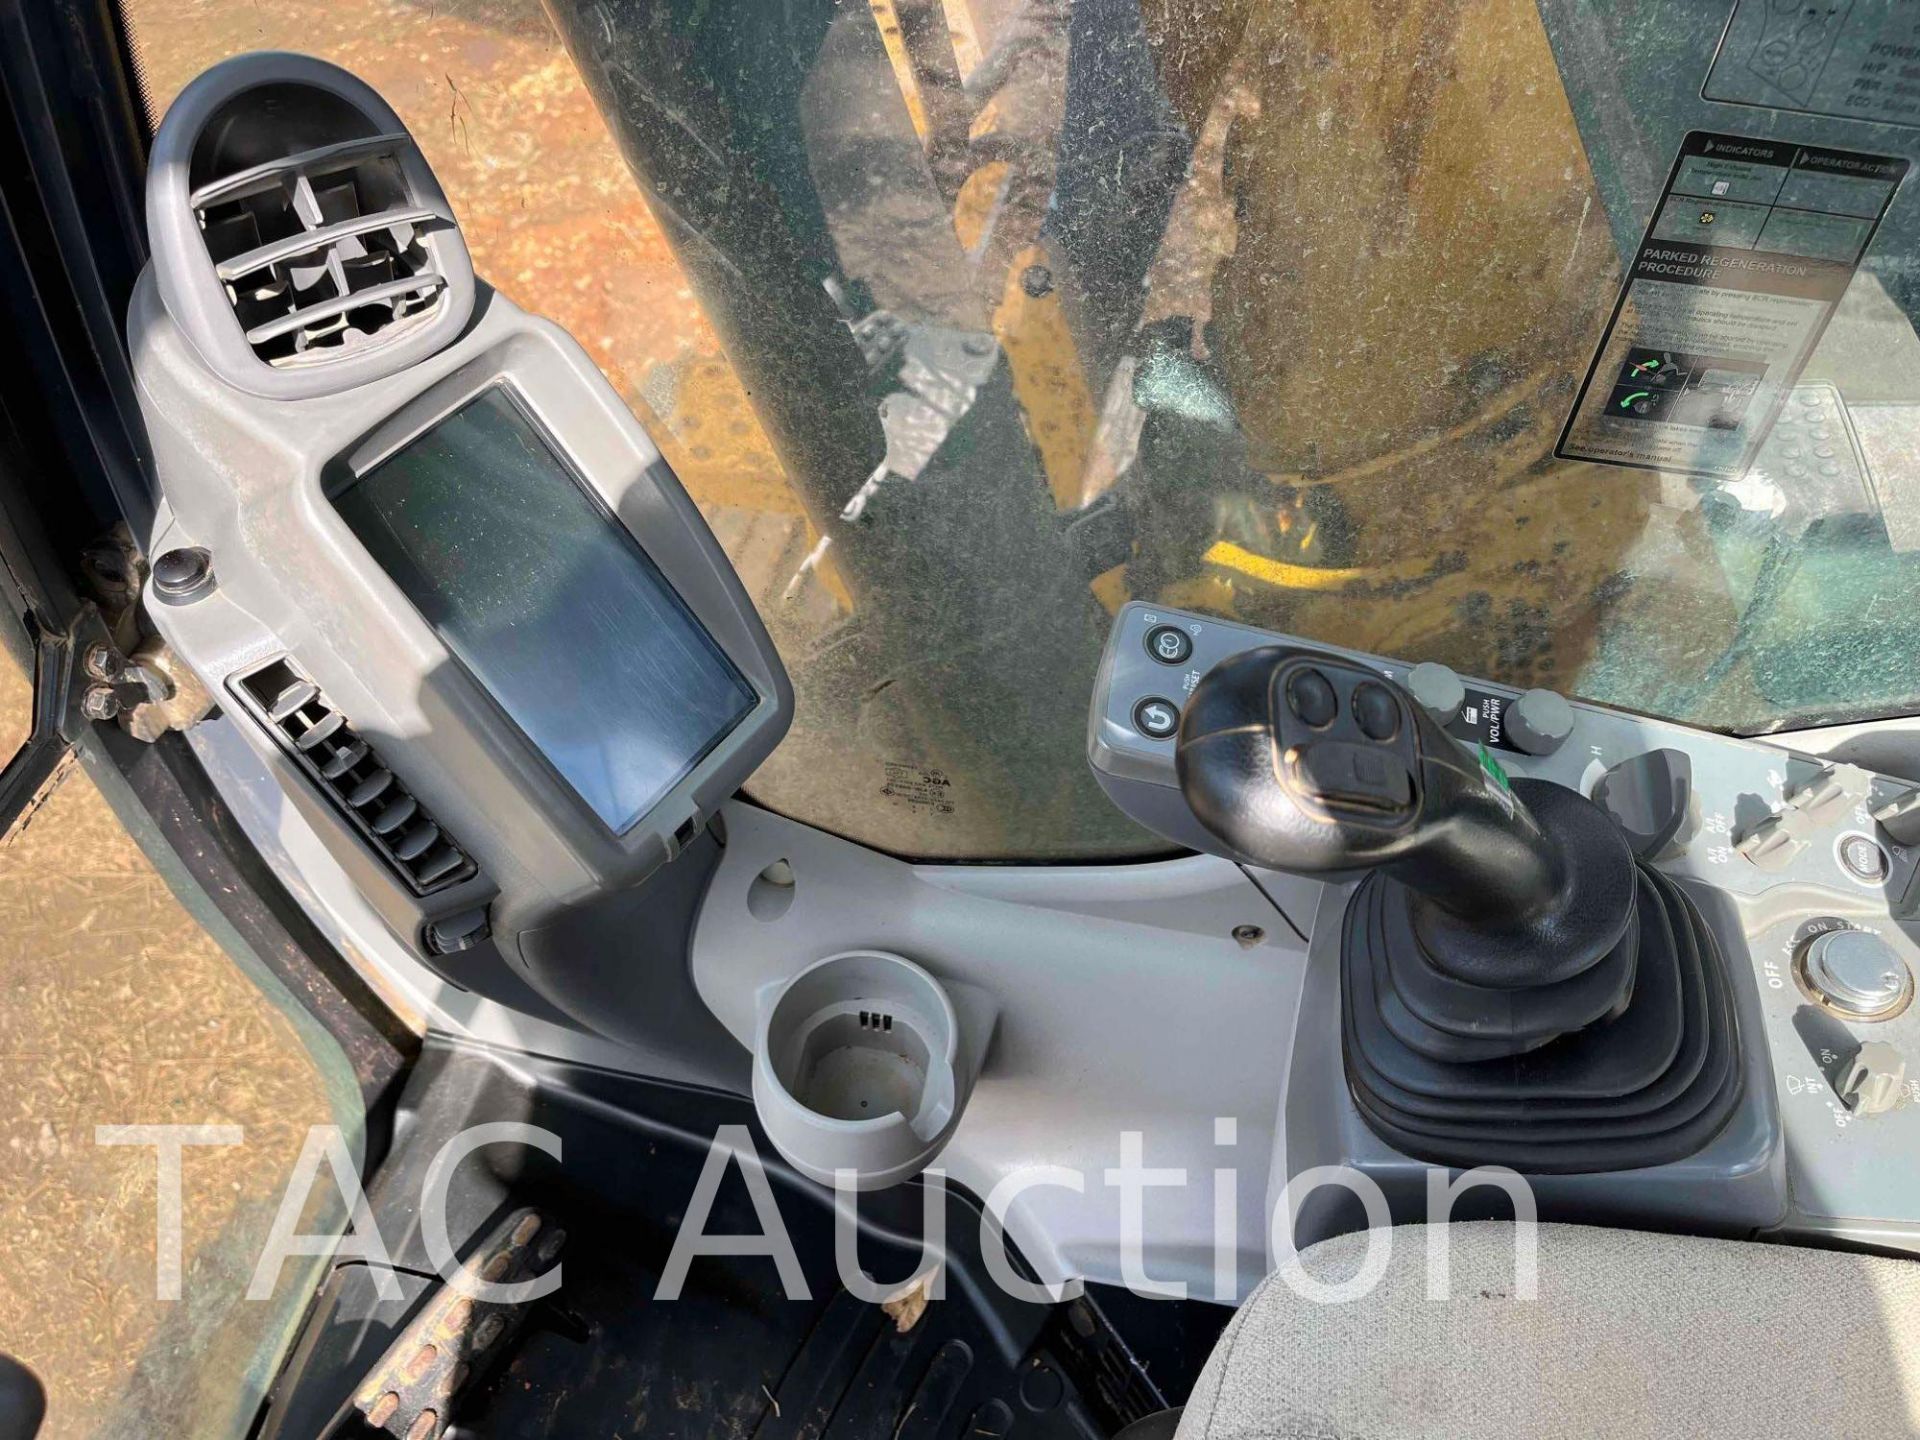 2019 John Deere 135G Excavator - Image 21 of 29